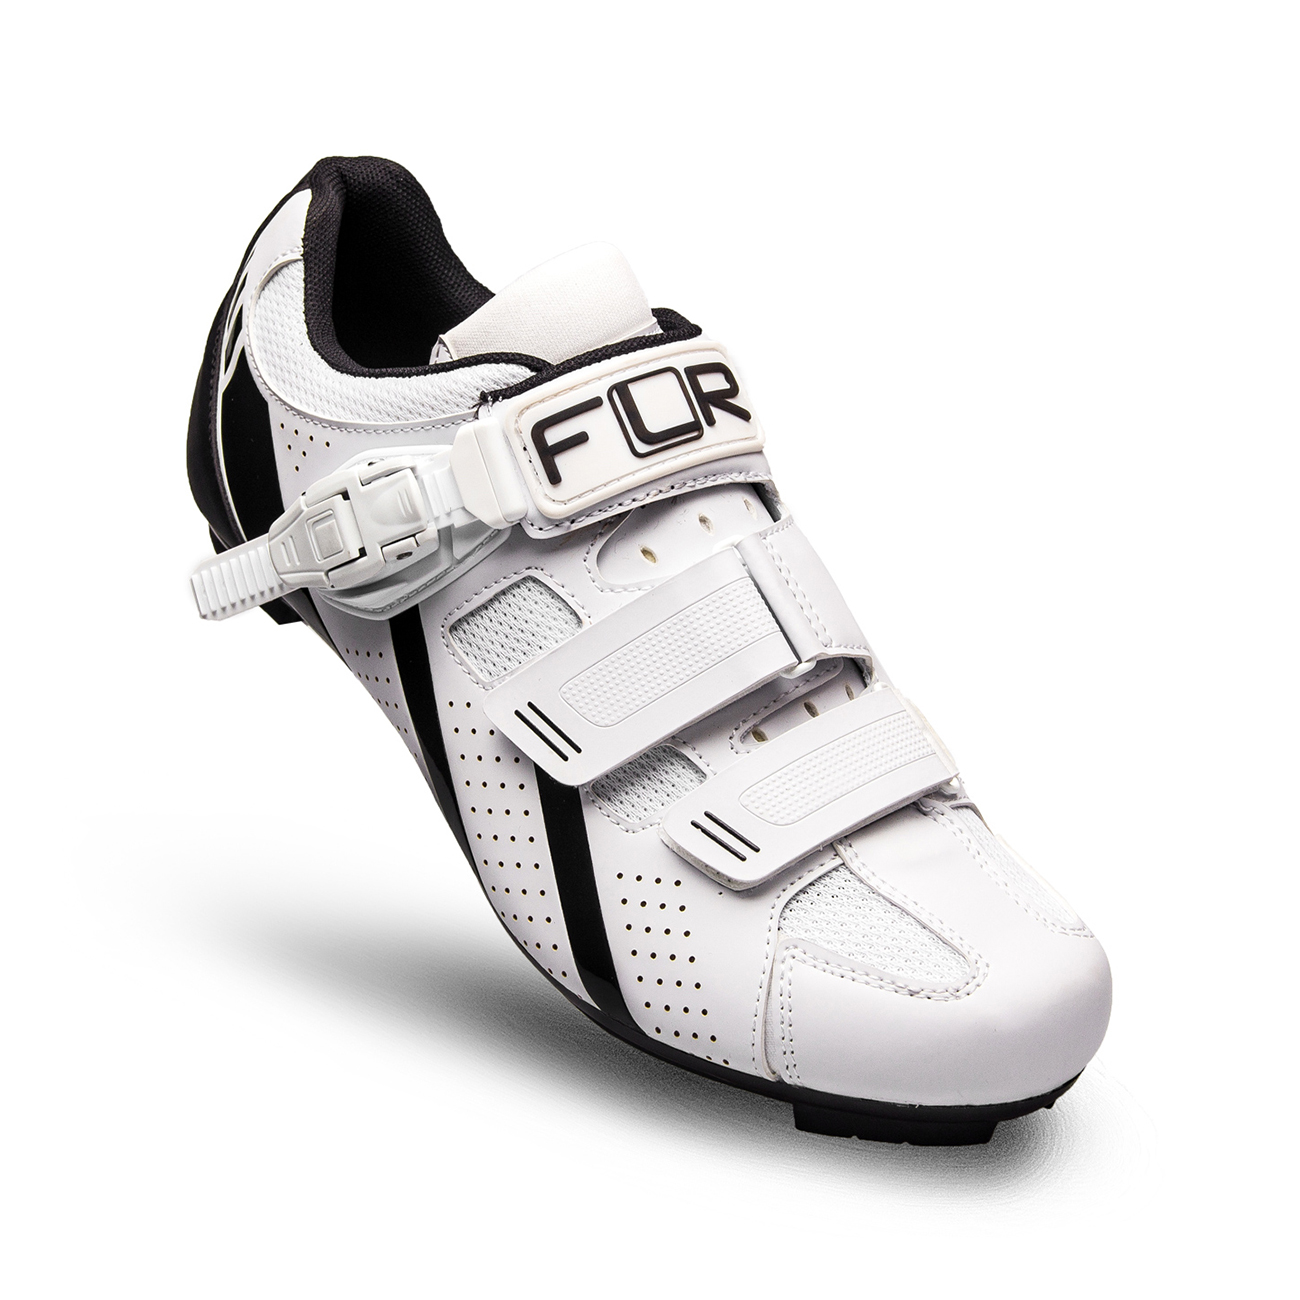 
                FLR Cyklistické tretry - F15 - černá/bílá 46
            